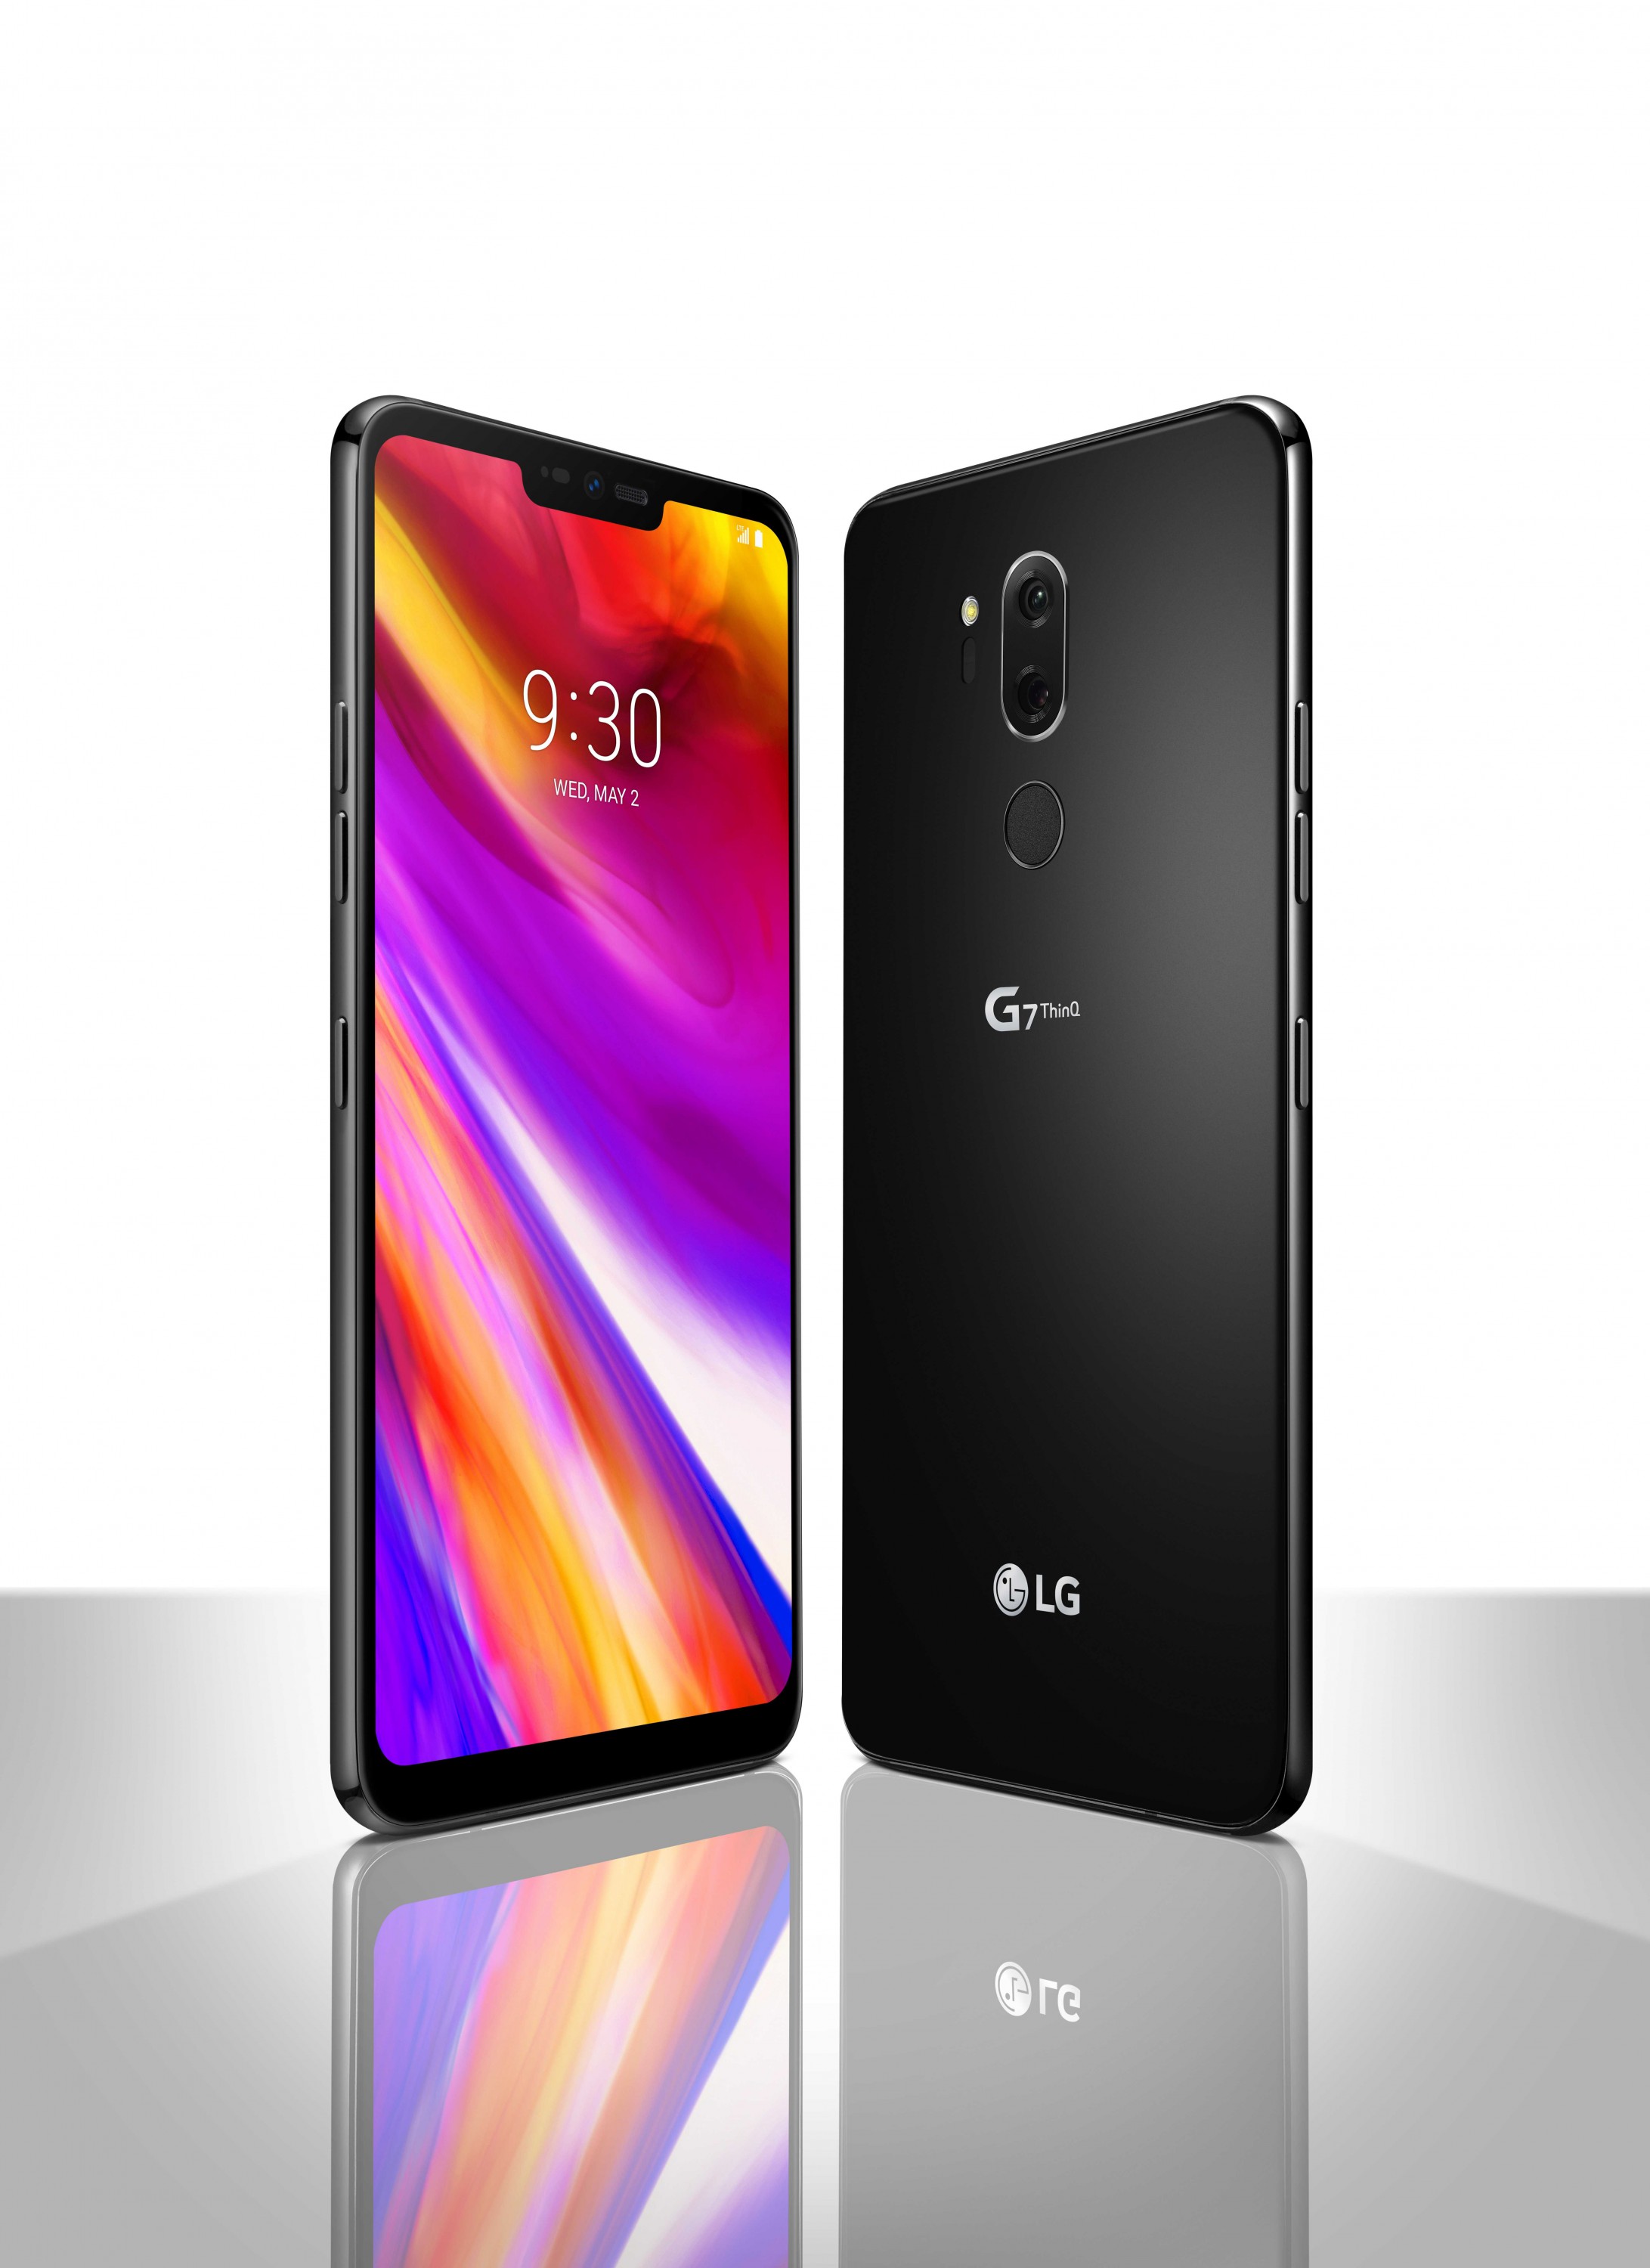 Смартфон LG G7 ThinQ представлен официально: 6,1-дюймовый экран с яркостью 1000 кд/кв.м, кнопка для вызова Google Assistant и аудиоподсистема с поддержкой виртуального объемного звука 7.1